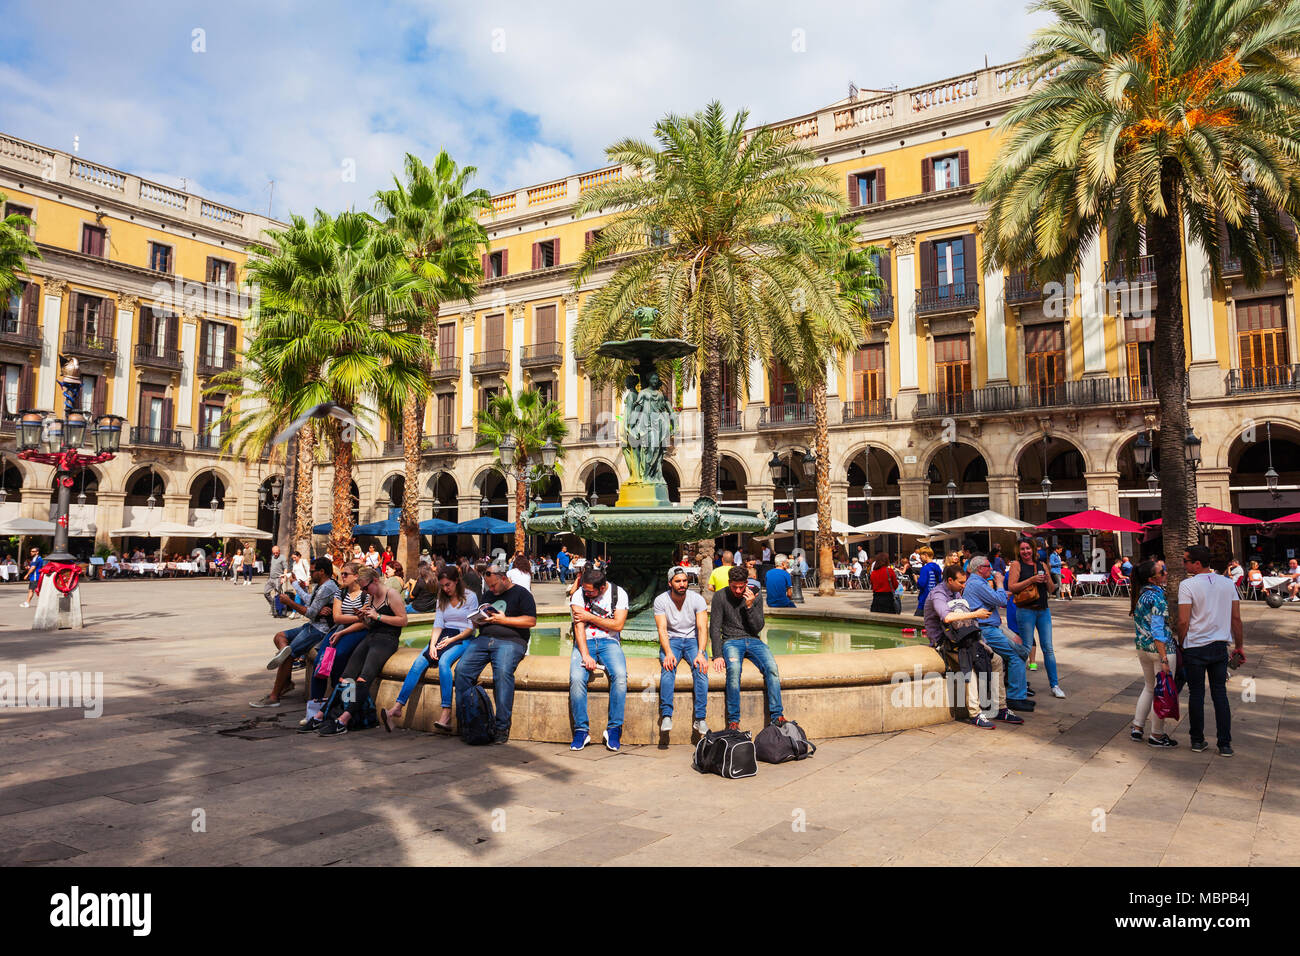 BARCELONA, Spanien - Oktober 02, 2017: Royal Square oder Placa Reial oder Plaza Real ist ein Platz in der Altstadt im Gotischen Viertel von Barcelona in Katalonien, Spai Stockfoto